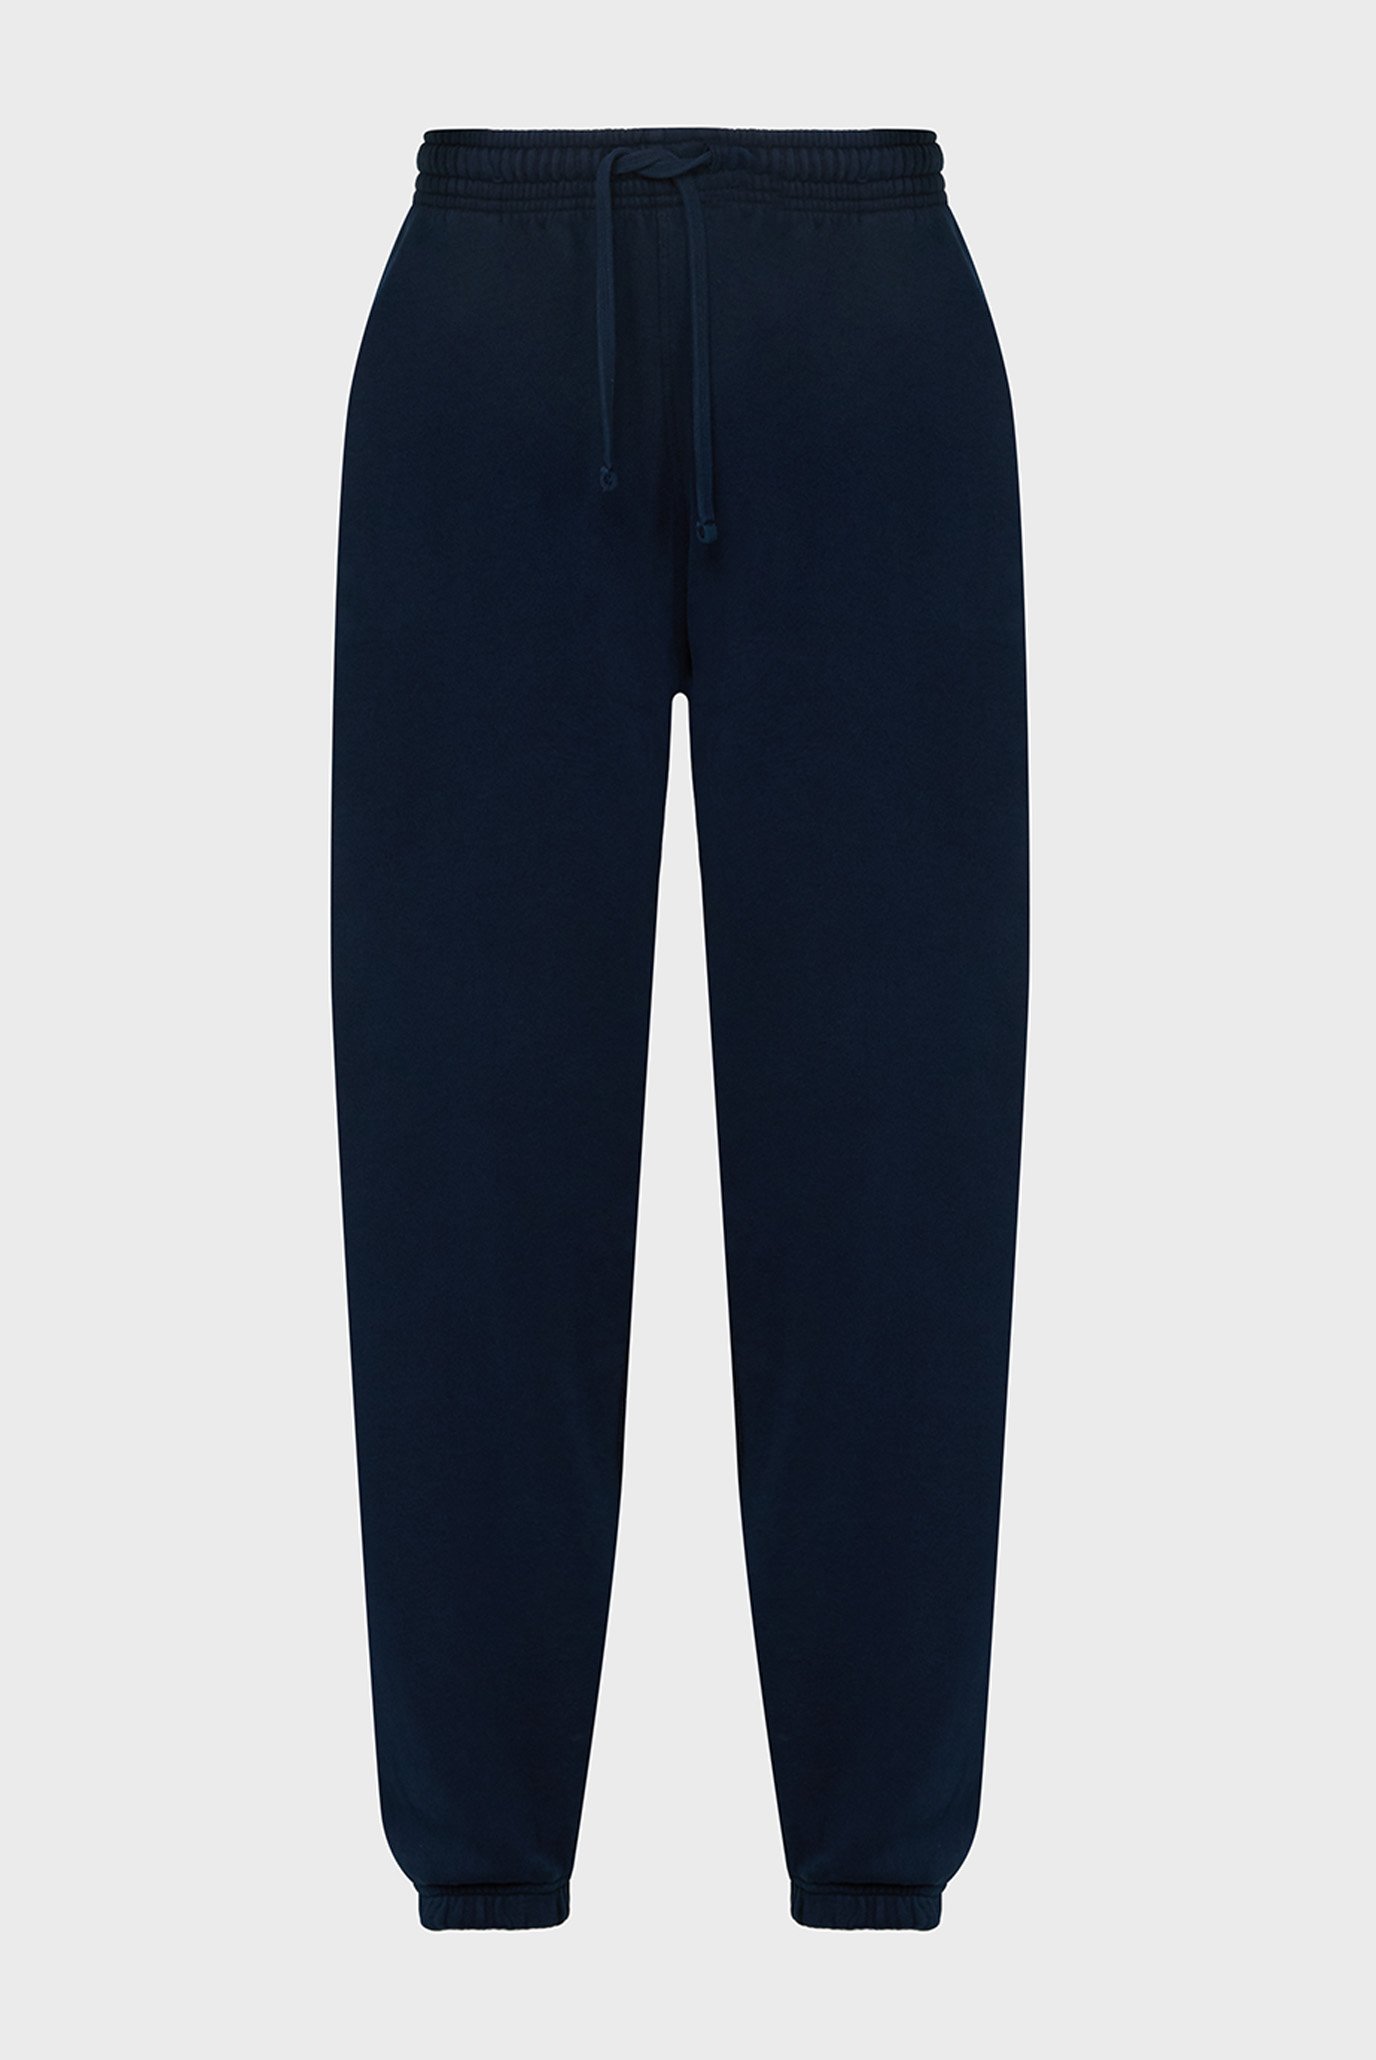 Мужские темно-синие спортивные брюки TJM RLX SWTPNT NW CLASSICS 1